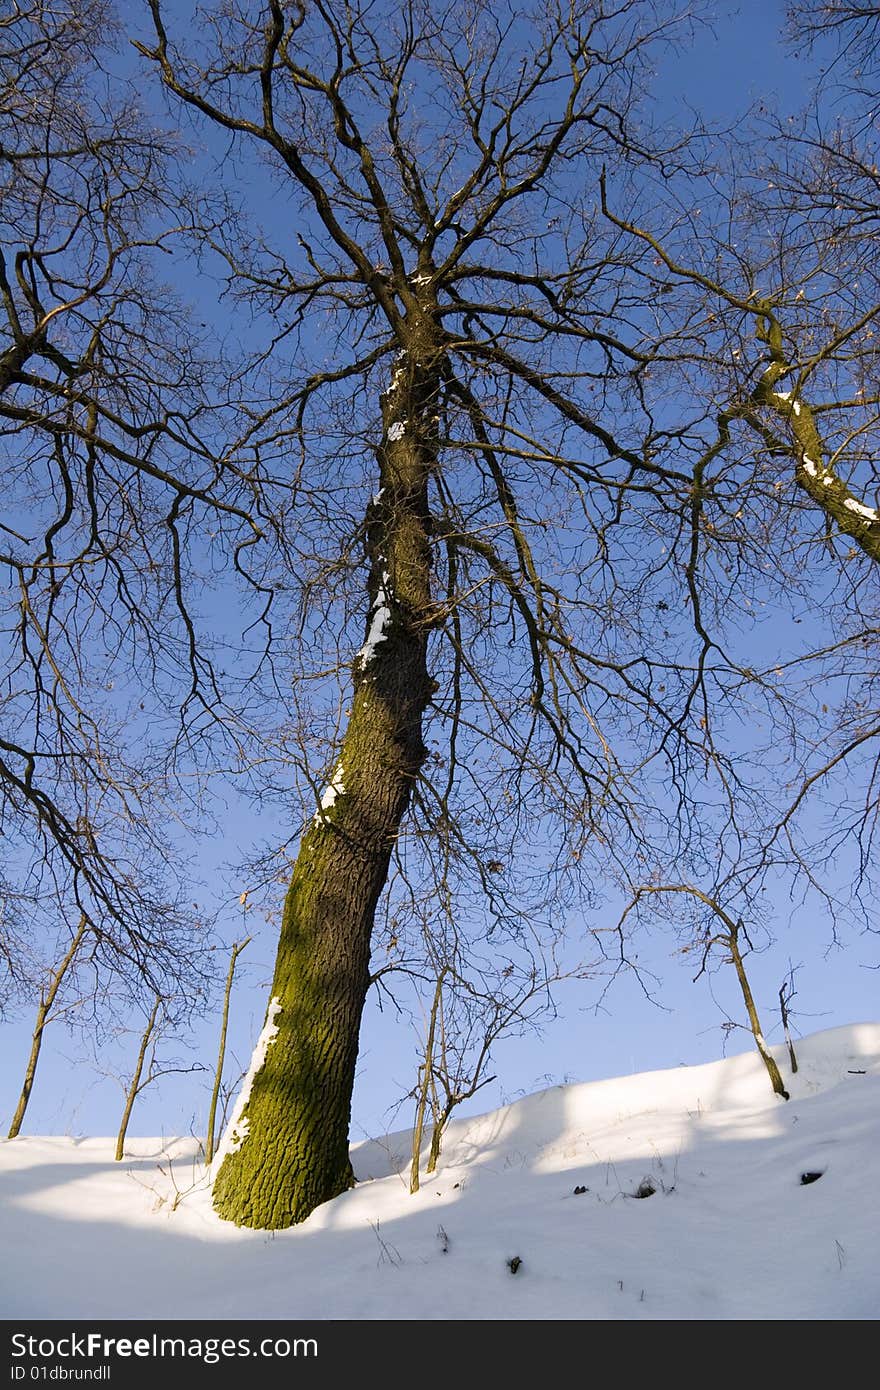 Oak Tree in Wintertime Landscape with snow